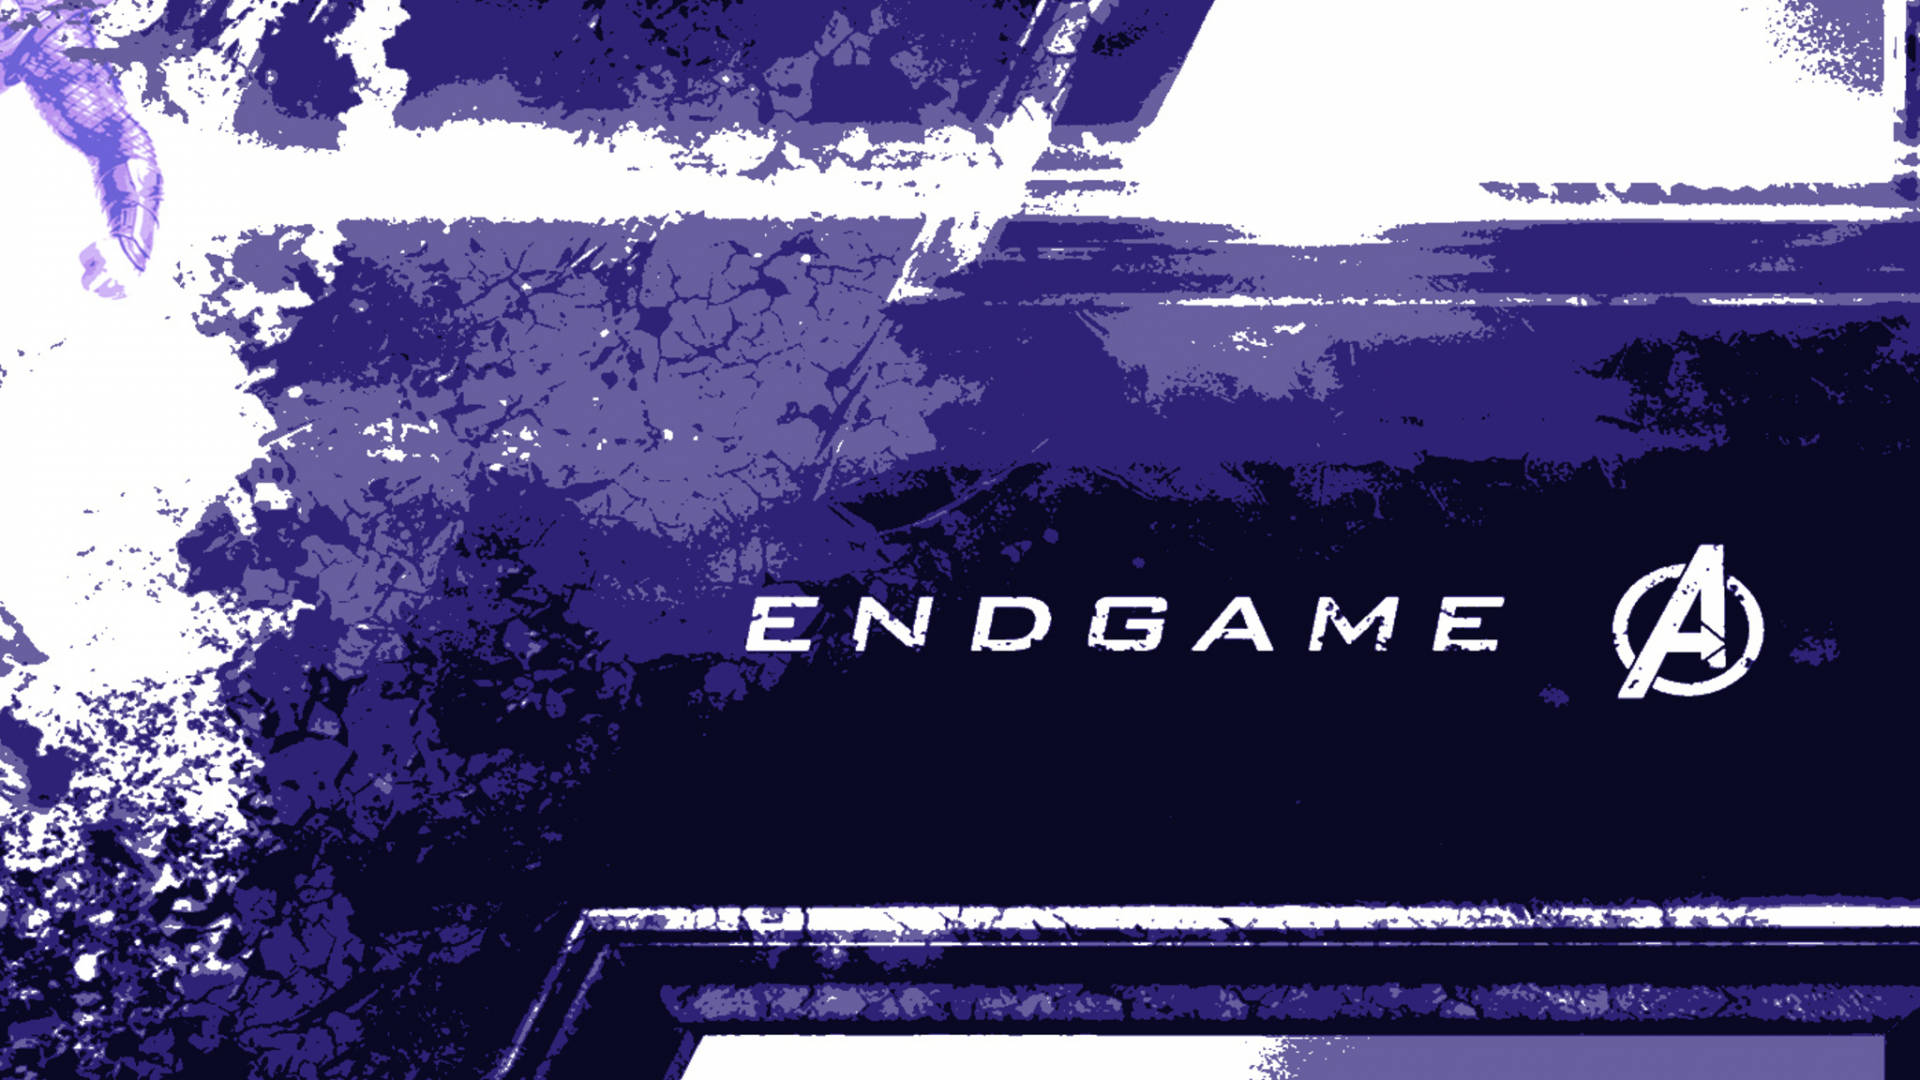 Endgame Avengers Logo Background